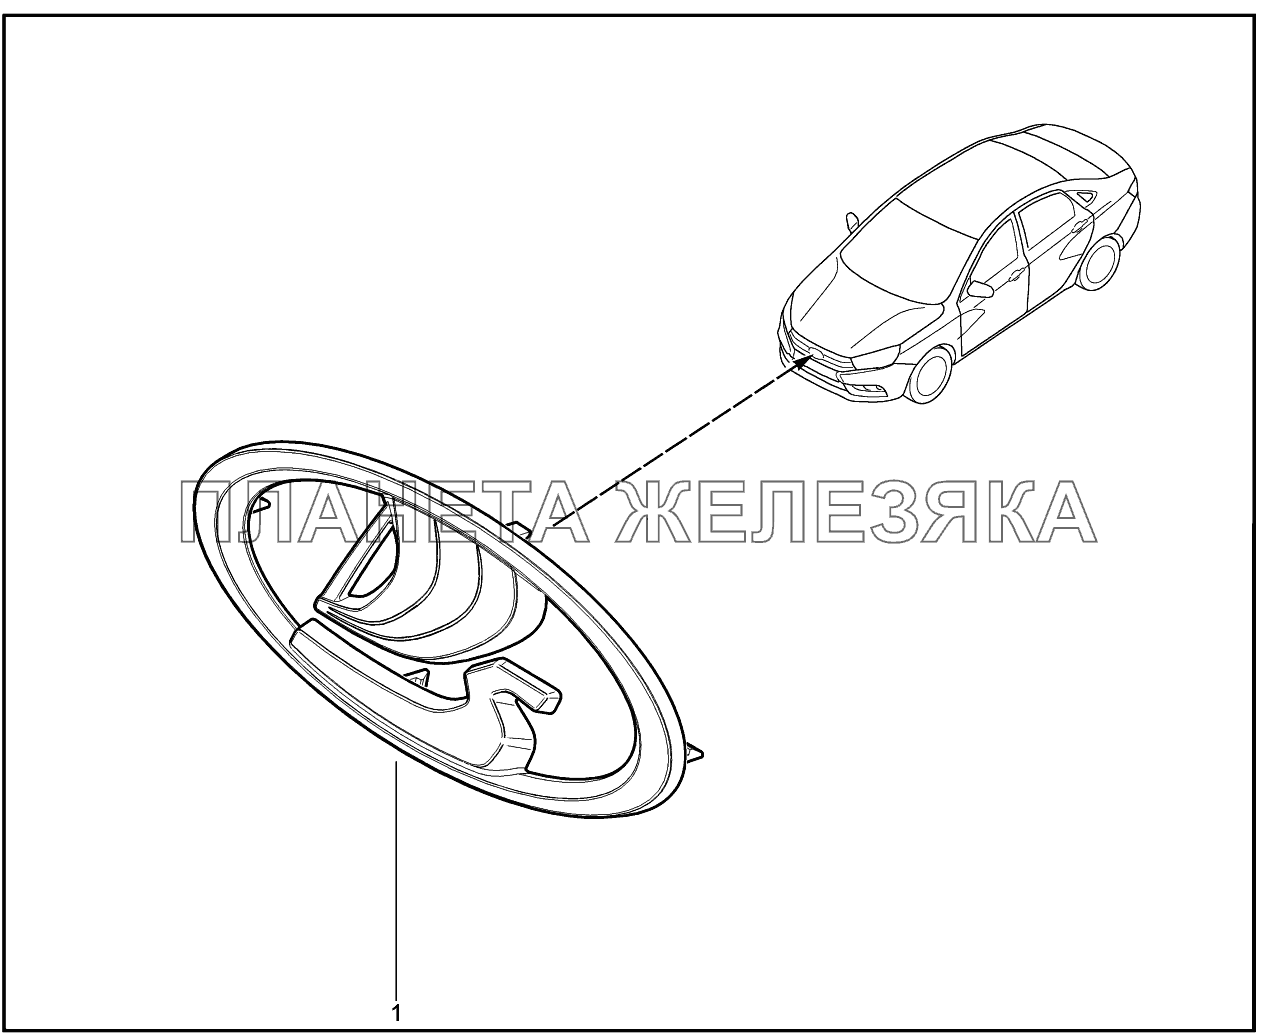 560010. Заводской знак Lada Vesta